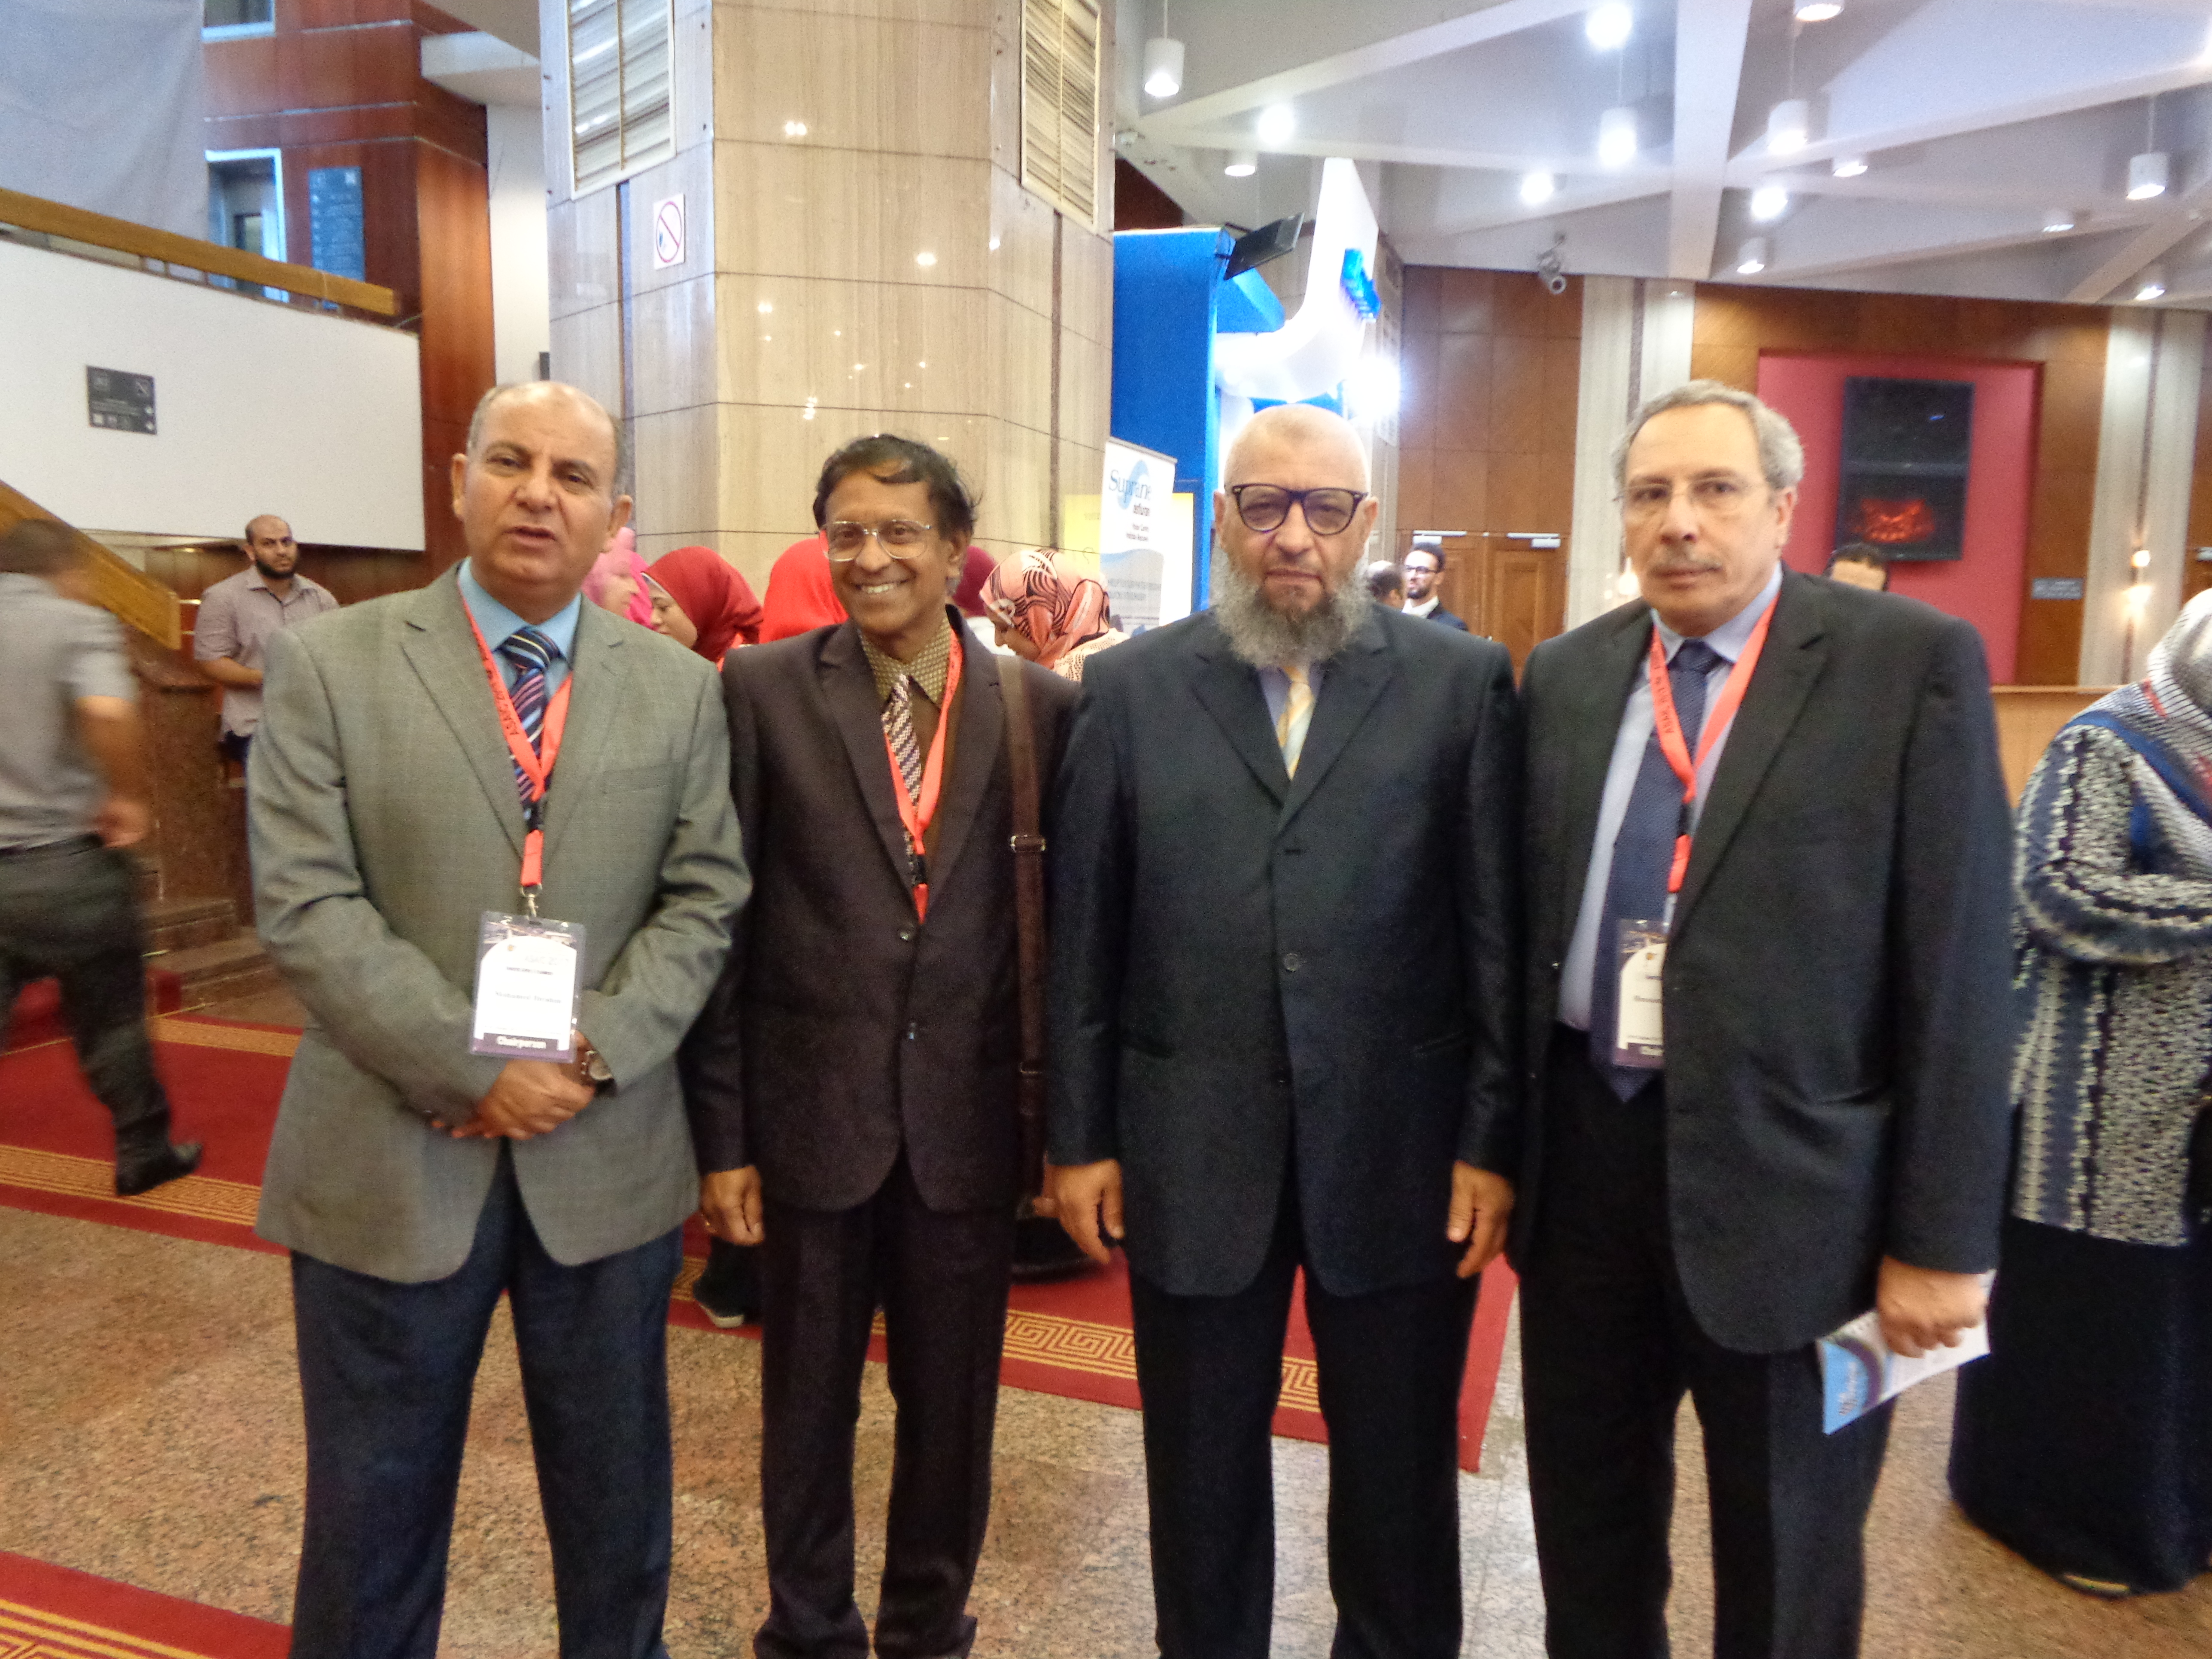 Bhavani Shankar Kodali Egypt meeting 